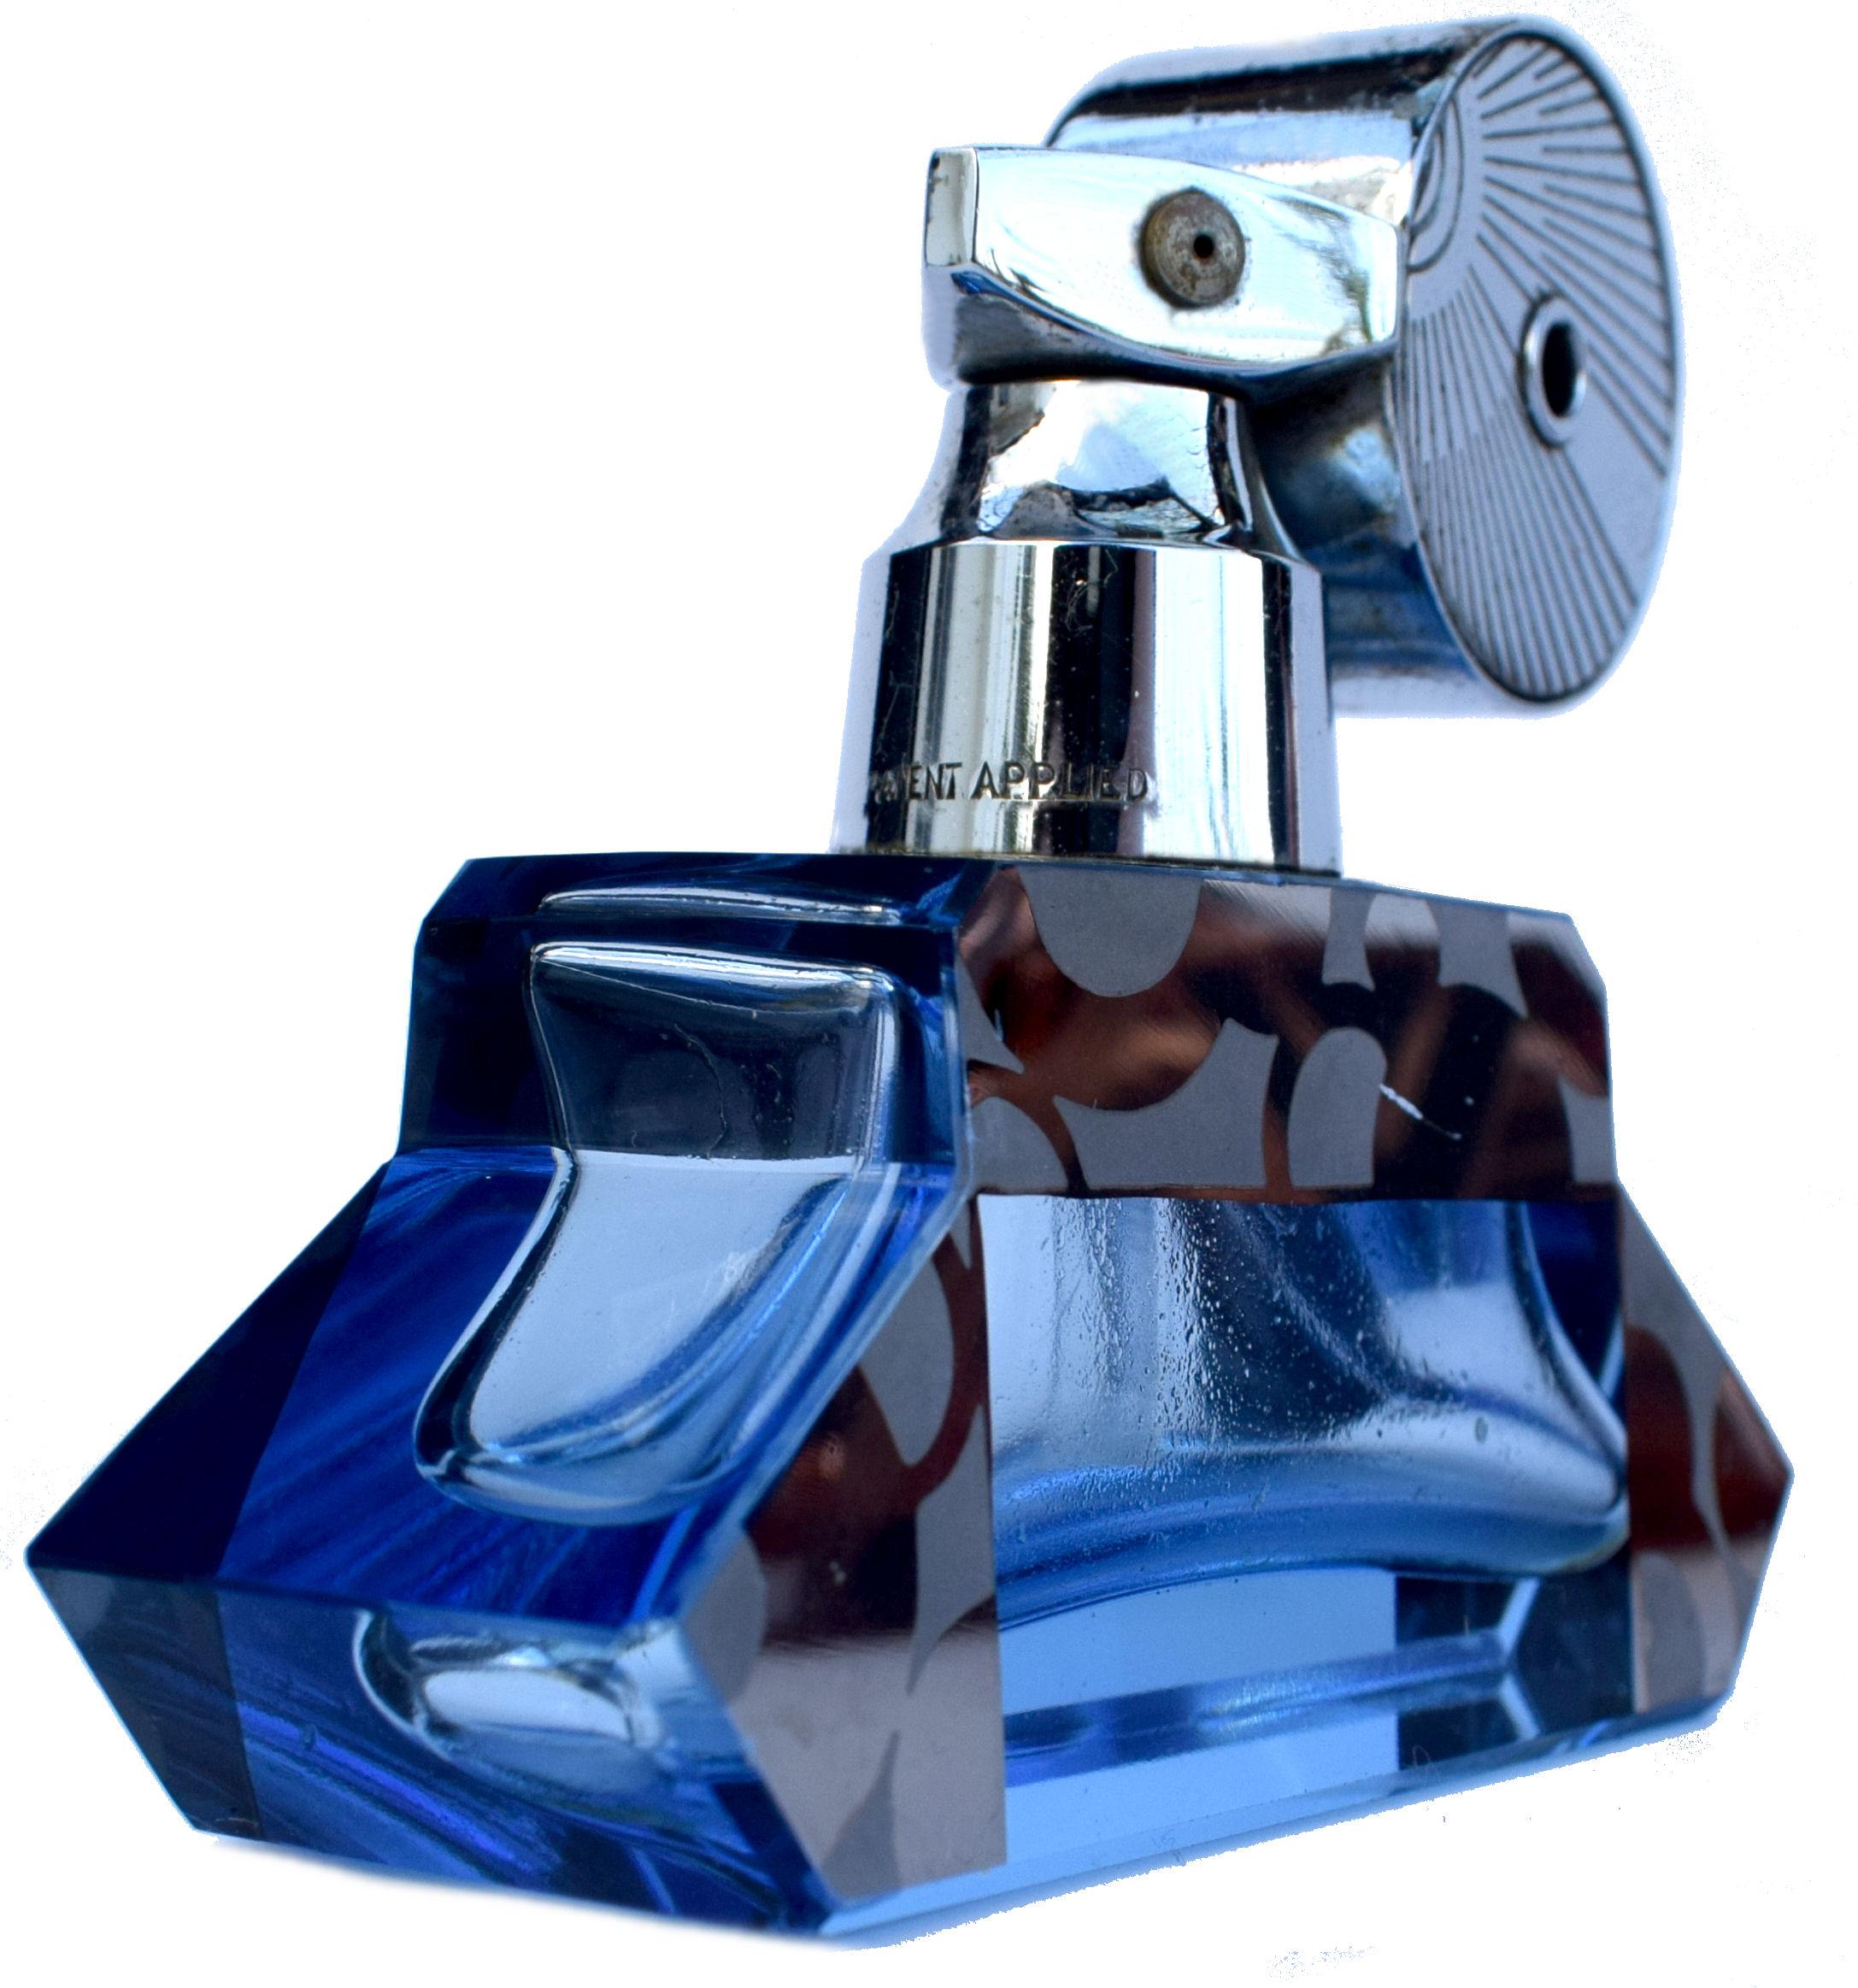 Un flacon atomiseur de parfum/de senteur Art Déco anglais des années 1930. Vaporisateur chromé avec flacon de parfum en verre bleu avec décoration en émail argenté/noir sur les côtés. Le col du pulvérisateur chromé porte la mention 